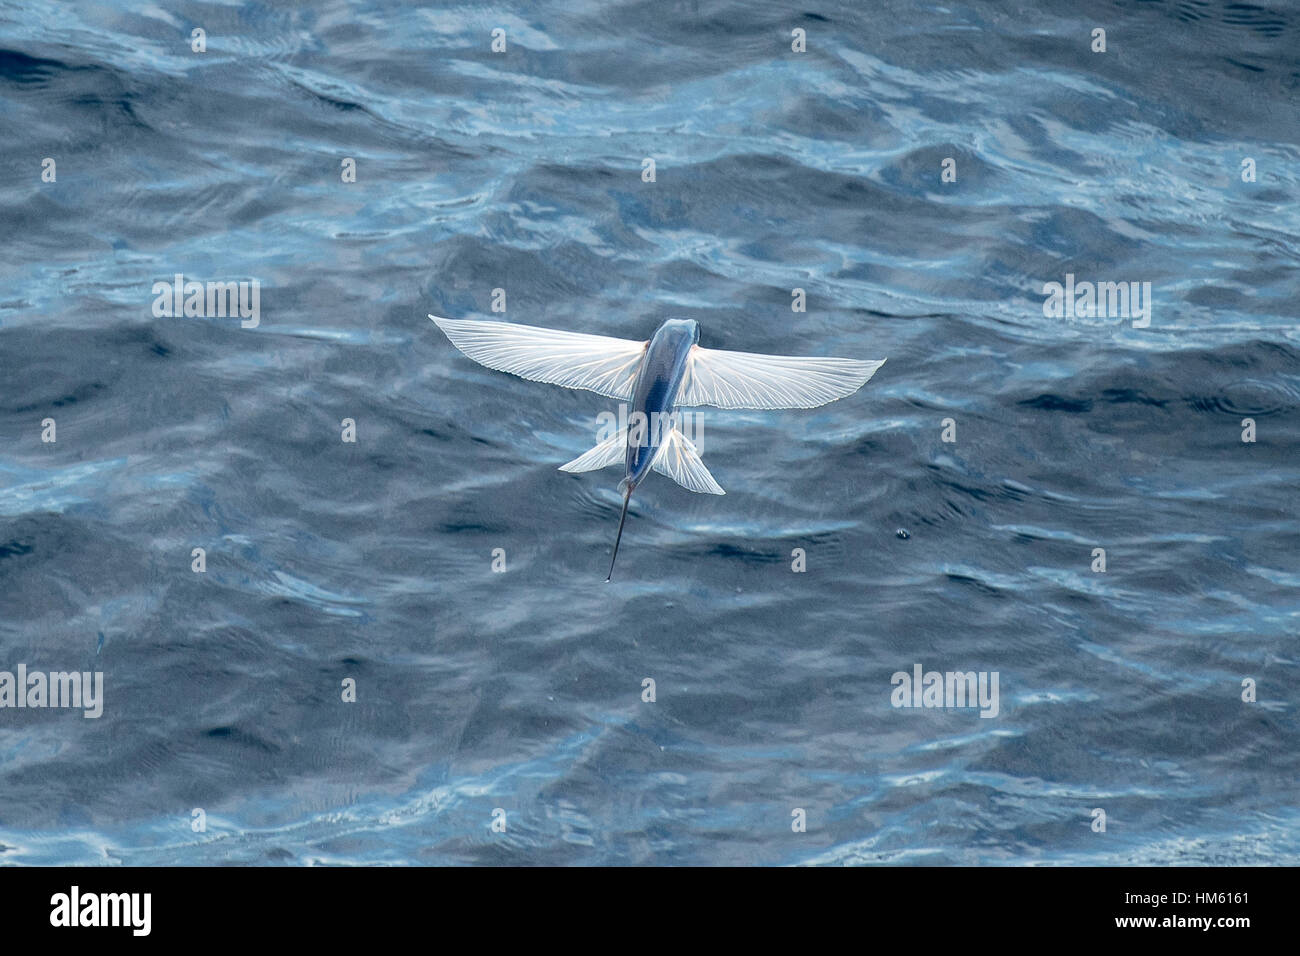 Les espèces de poissons volants dans les airs, nom scientifique inconnu, plusieurs centaines de milles au large de la Mauritanie, l'Afrique, l'océan Atlantique. Banque D'Images